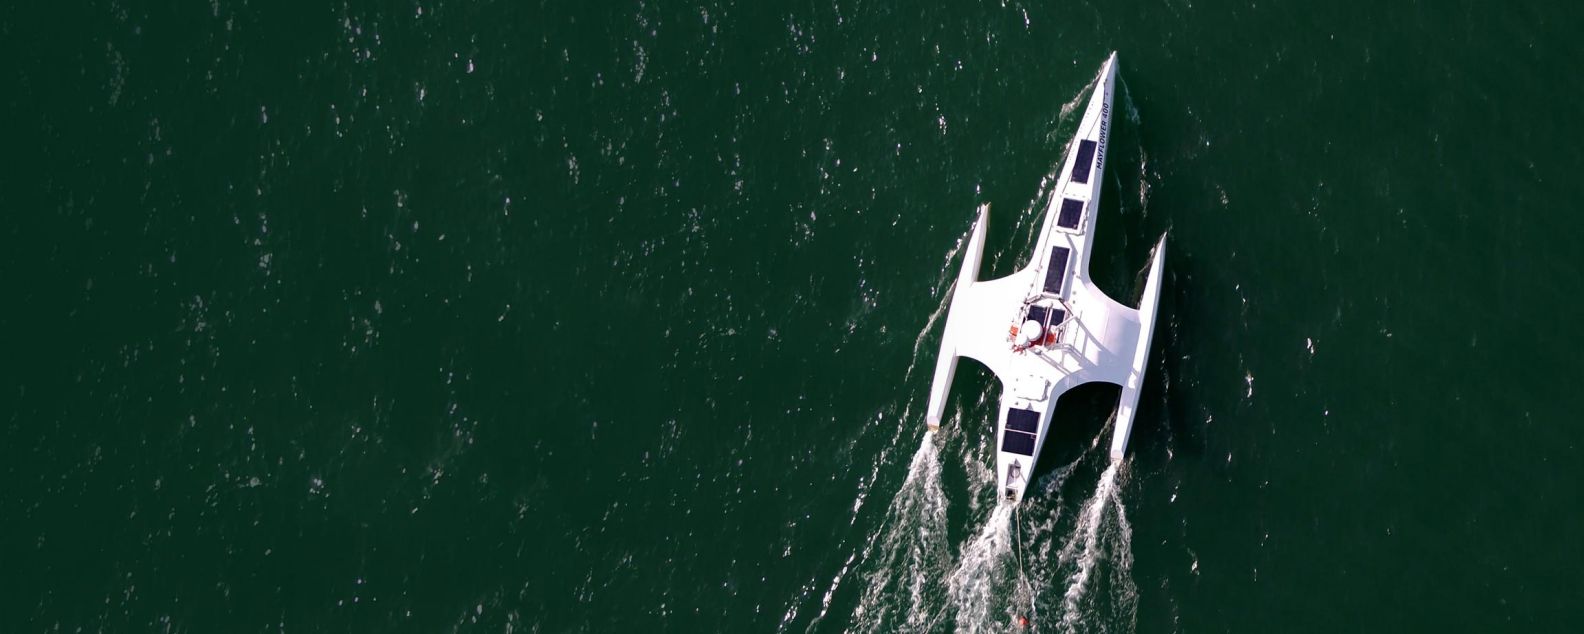 海を渡る、完全自動航行の海上調査船メイフラワー号の航空写真